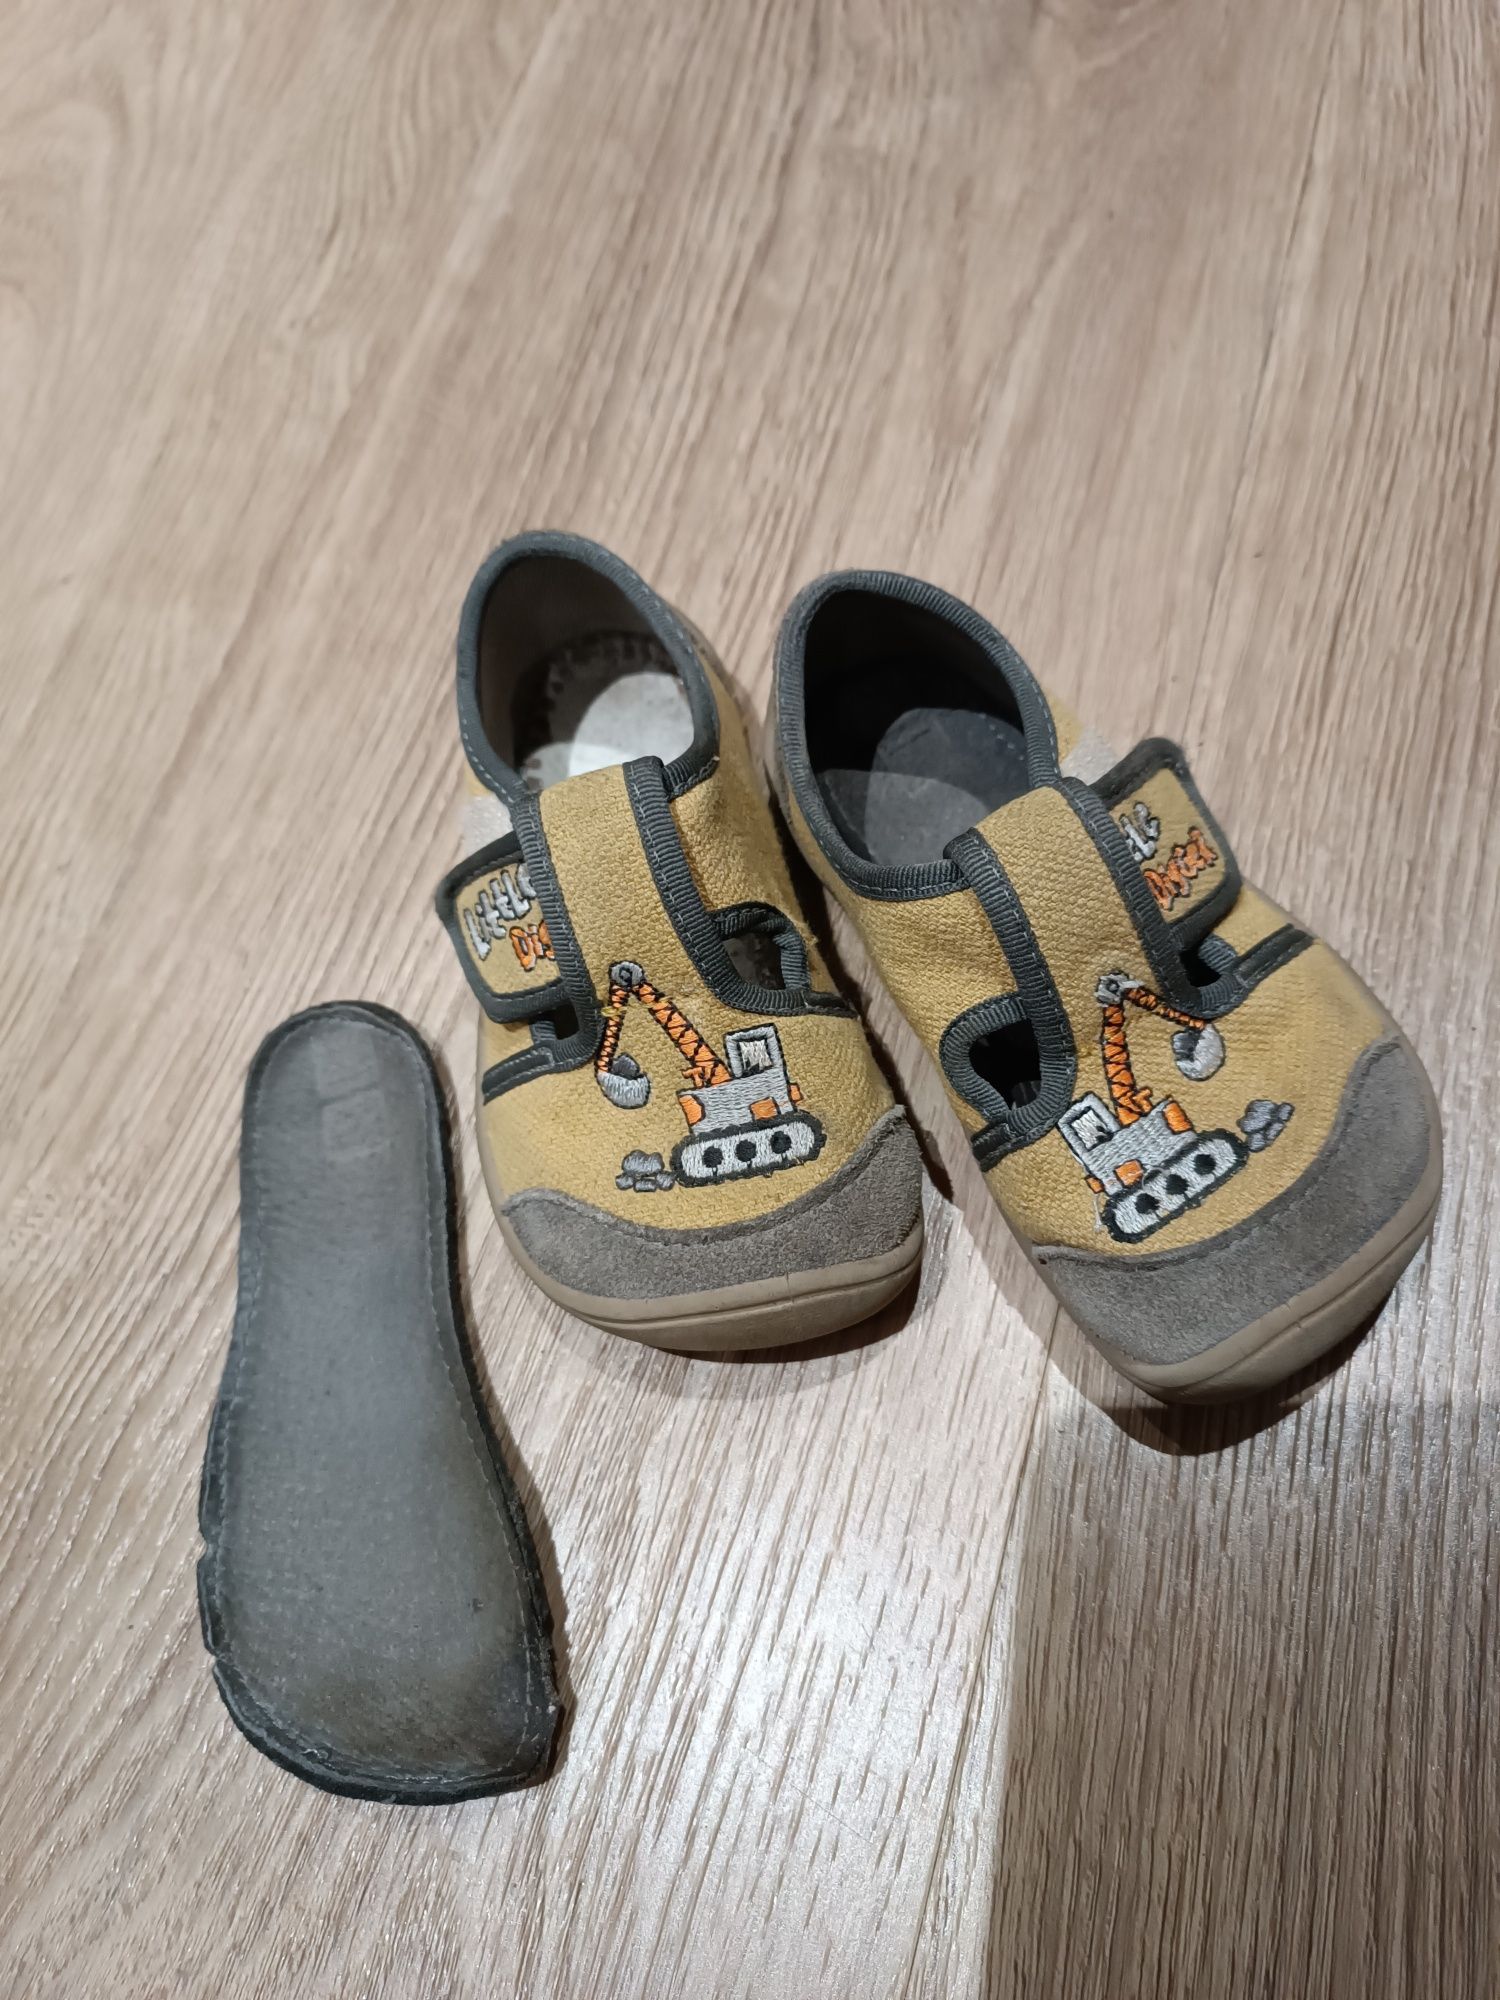 Sandálias originais marca bar3foot